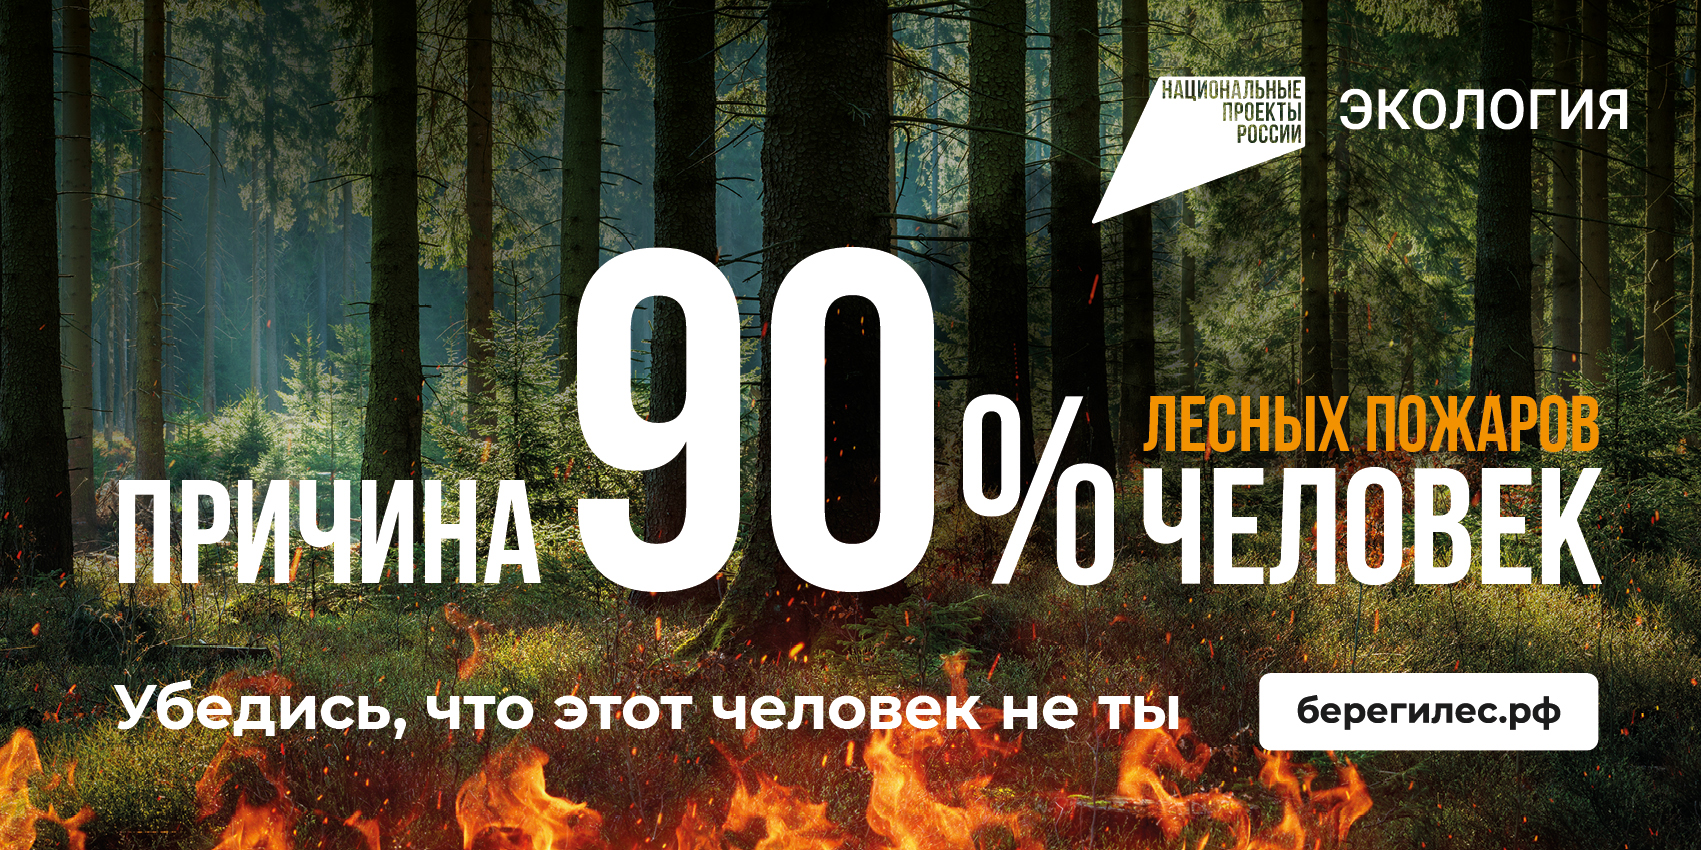 Причина 90% лесных пожаров - человек! Берегите лес!